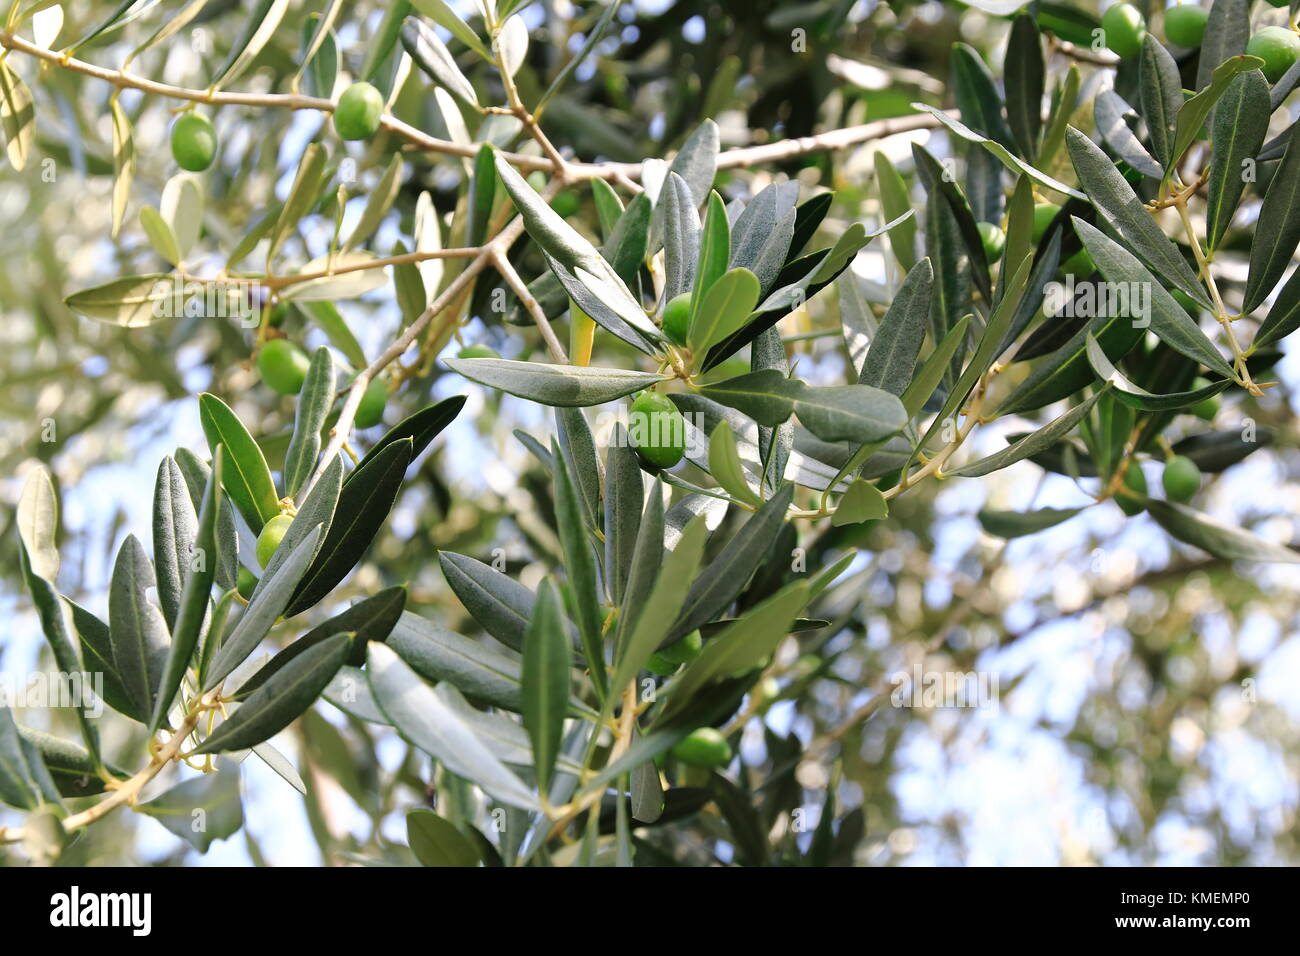 Grüne Oliven an einem Strauch, Olivenbaum Stock Photo